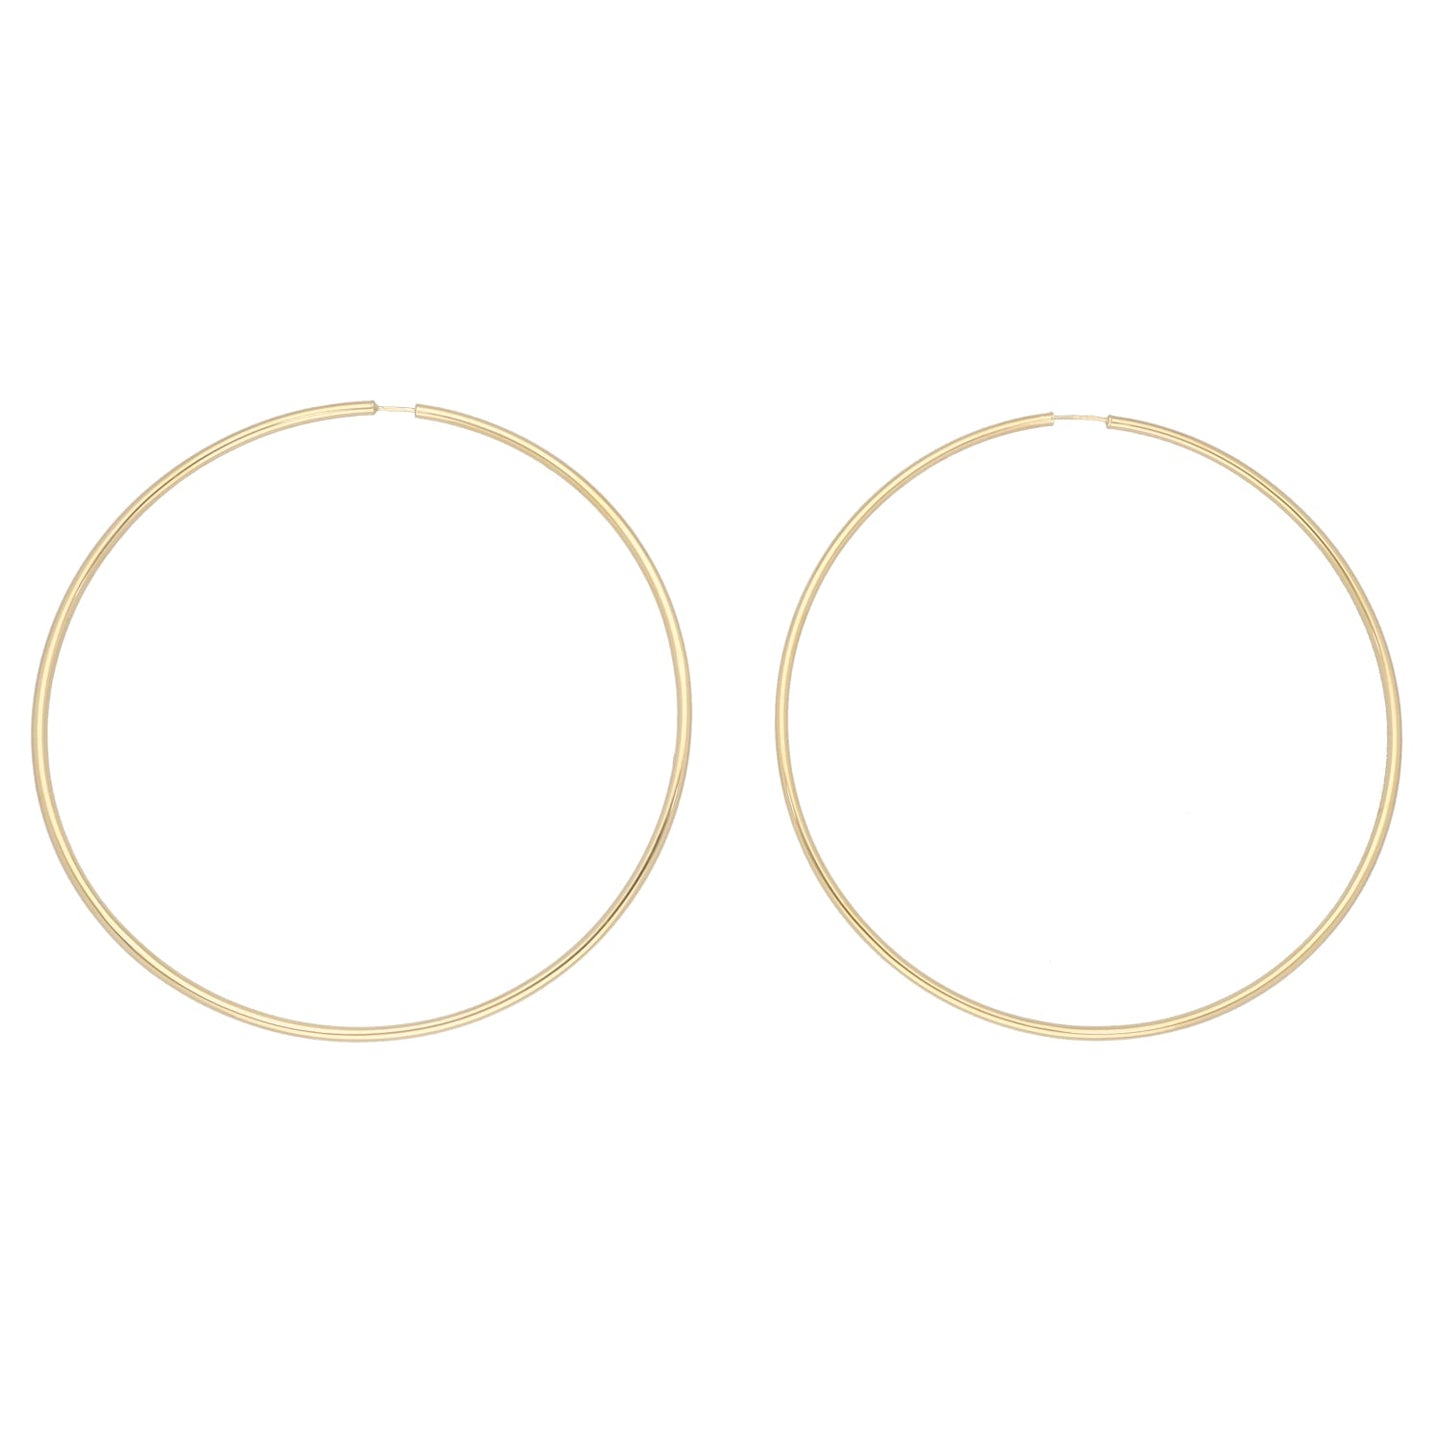 New 9ct Gold Large Hoop Earrings